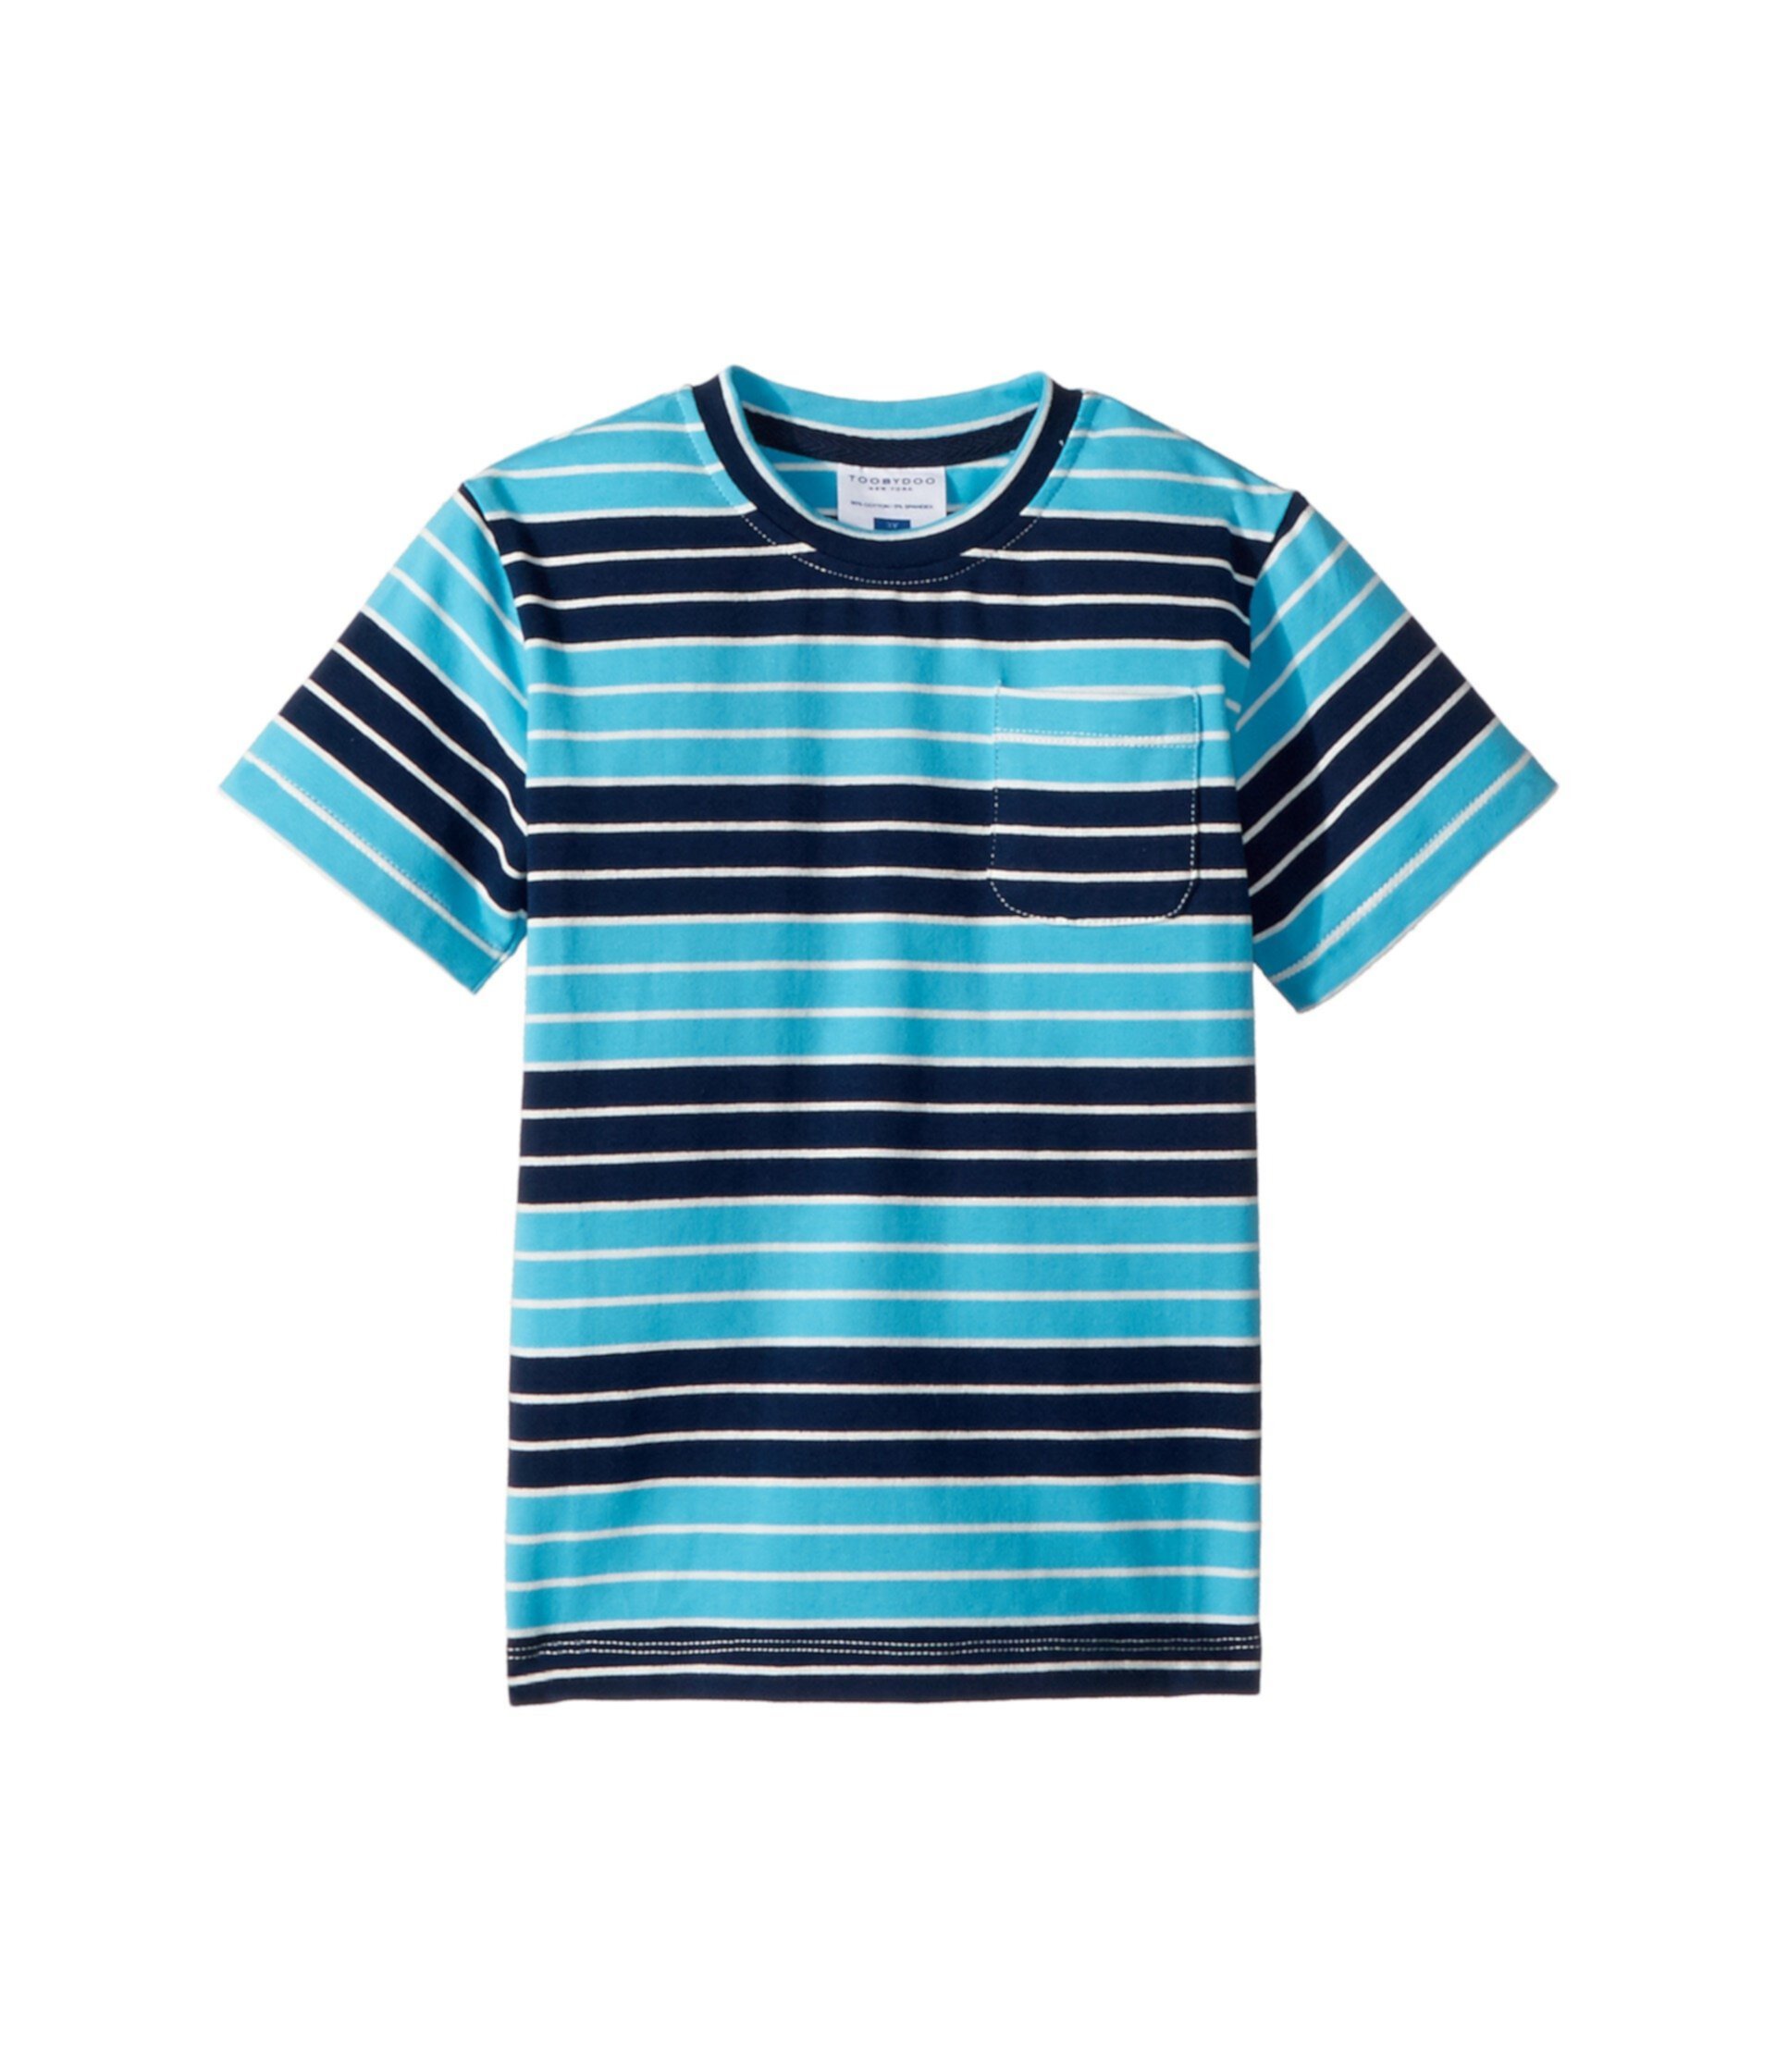 Темно-синяя футболка с карманами в полоску цвета морской волны (для малышей / маленьких детей / старших детей) Toobydoo